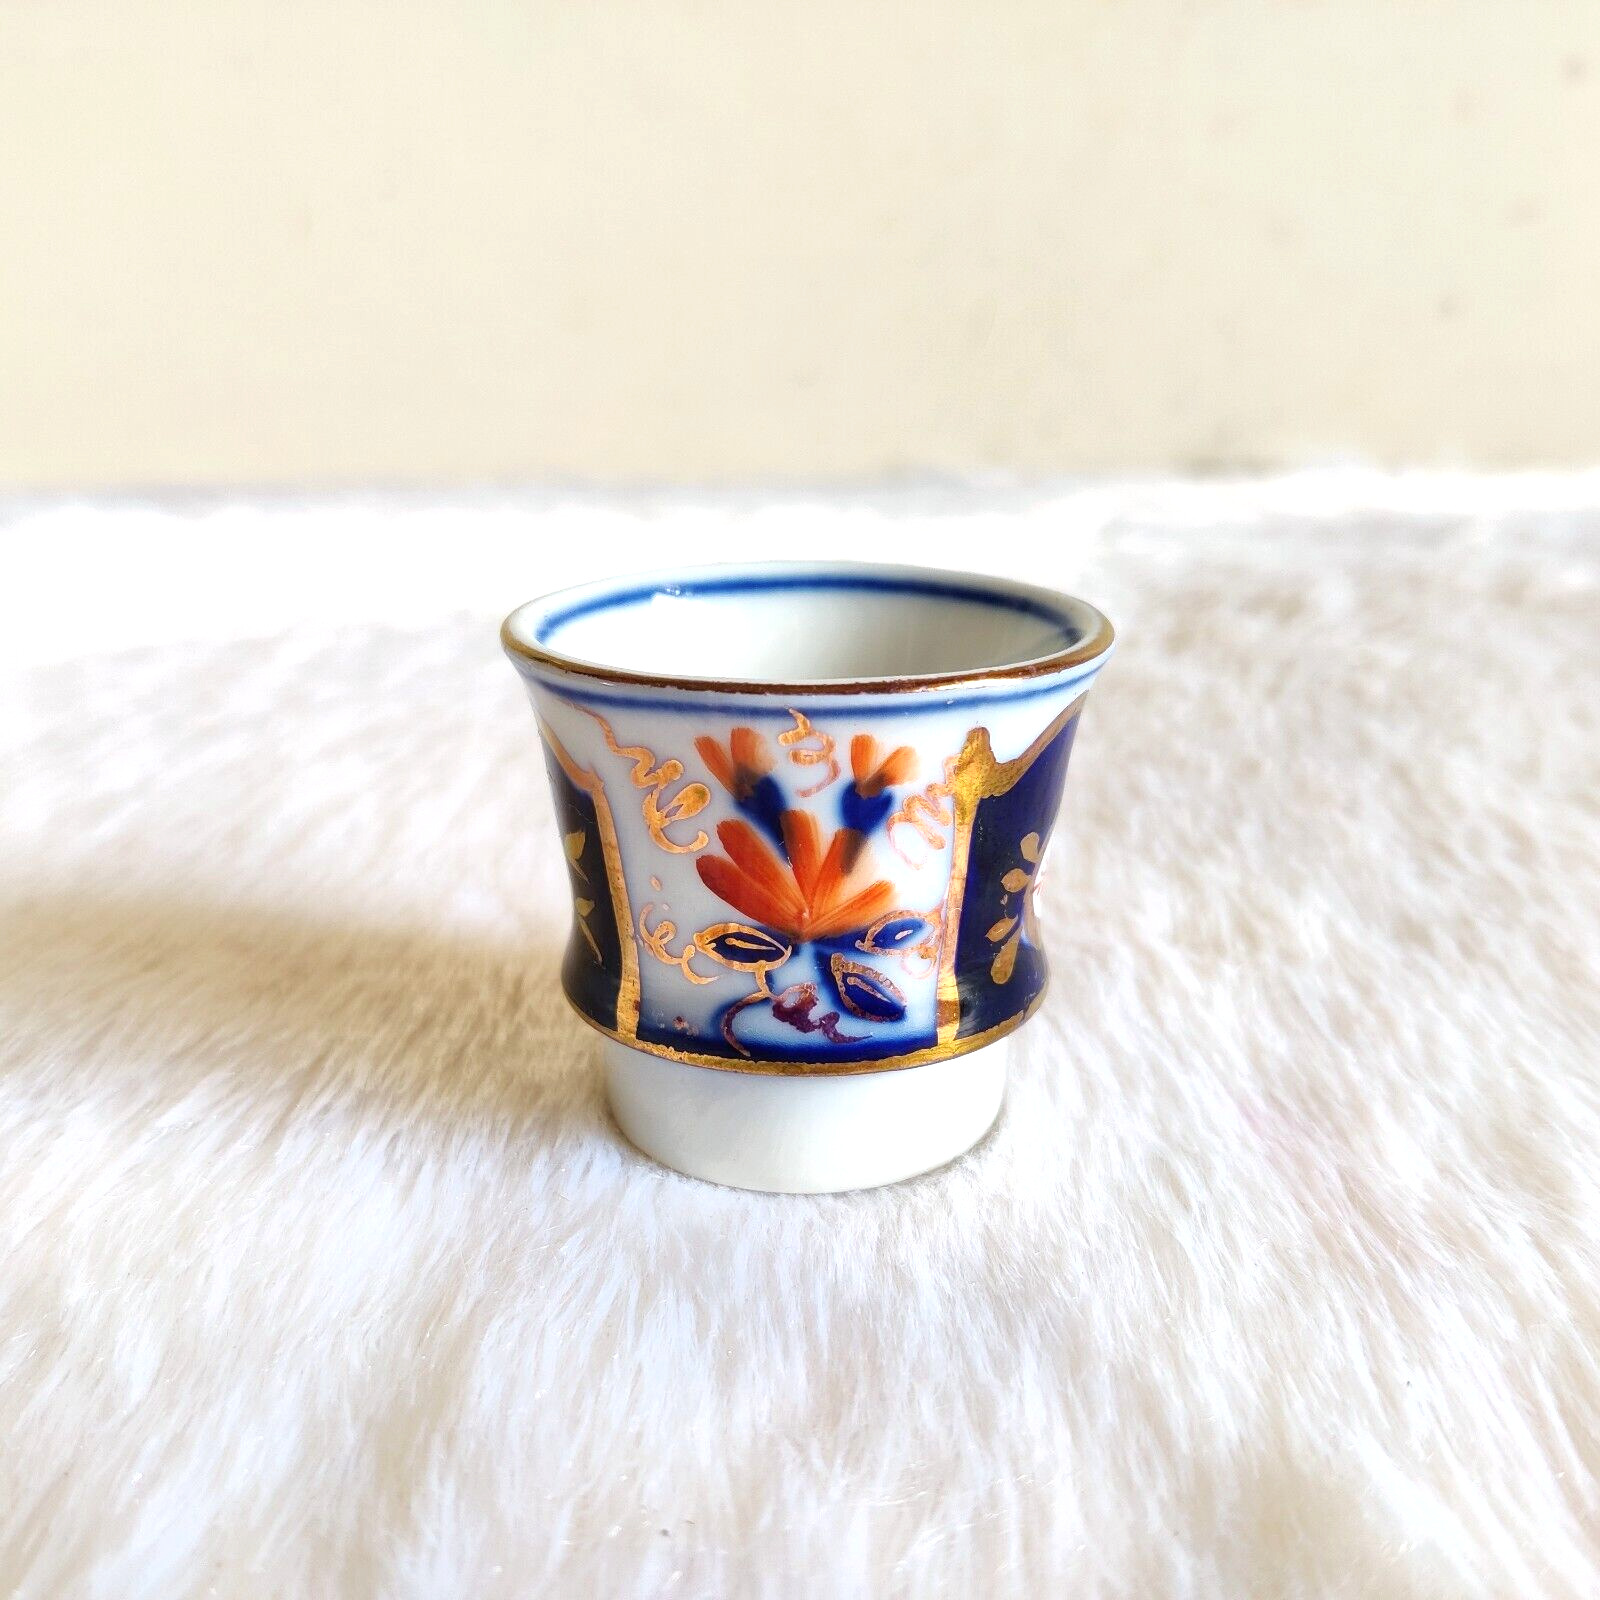 1930s Vintage Beautiful Miniature Enamelled Golden Work Porcelain Cup Japan C246